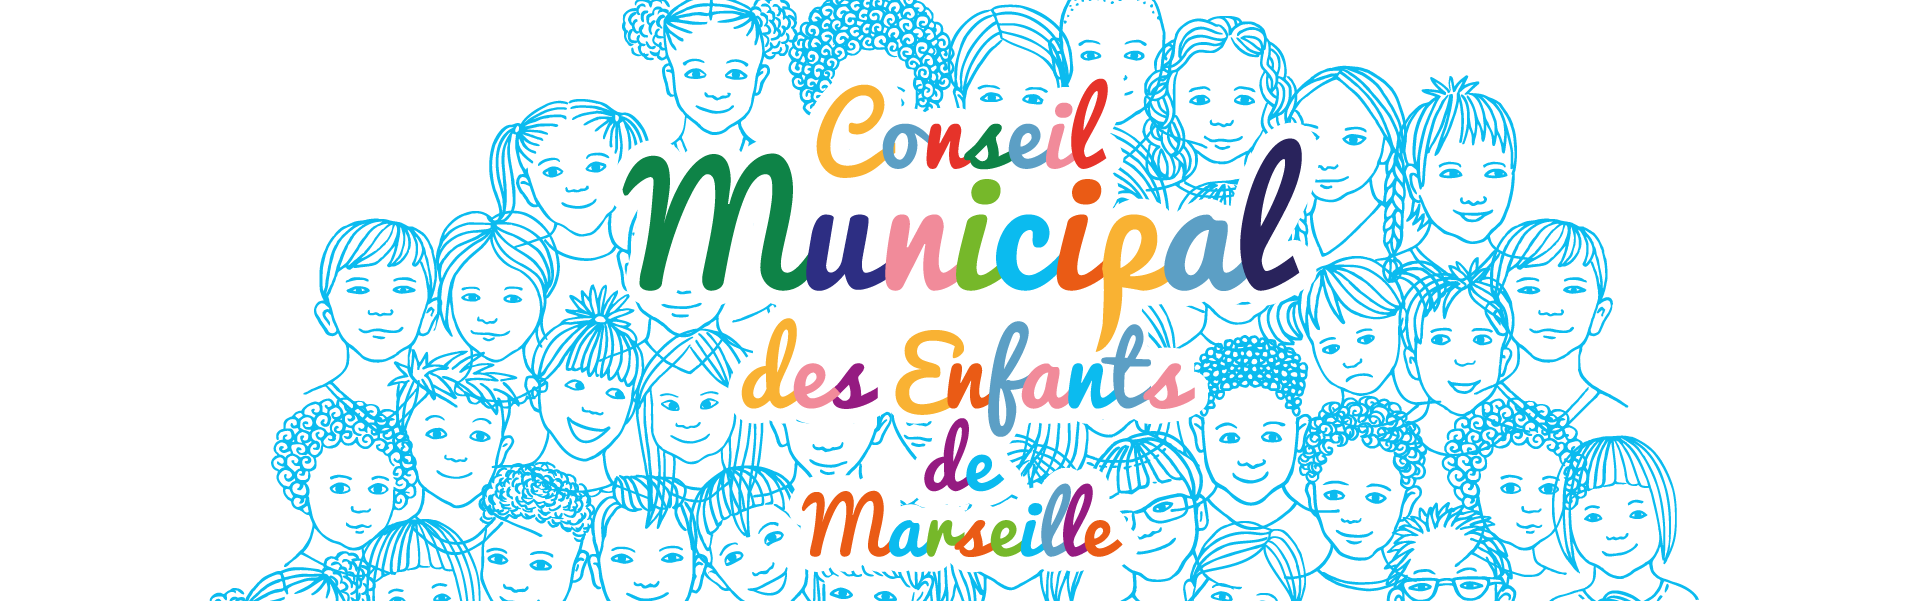 Conseil Municipal des Enfants de Marseille